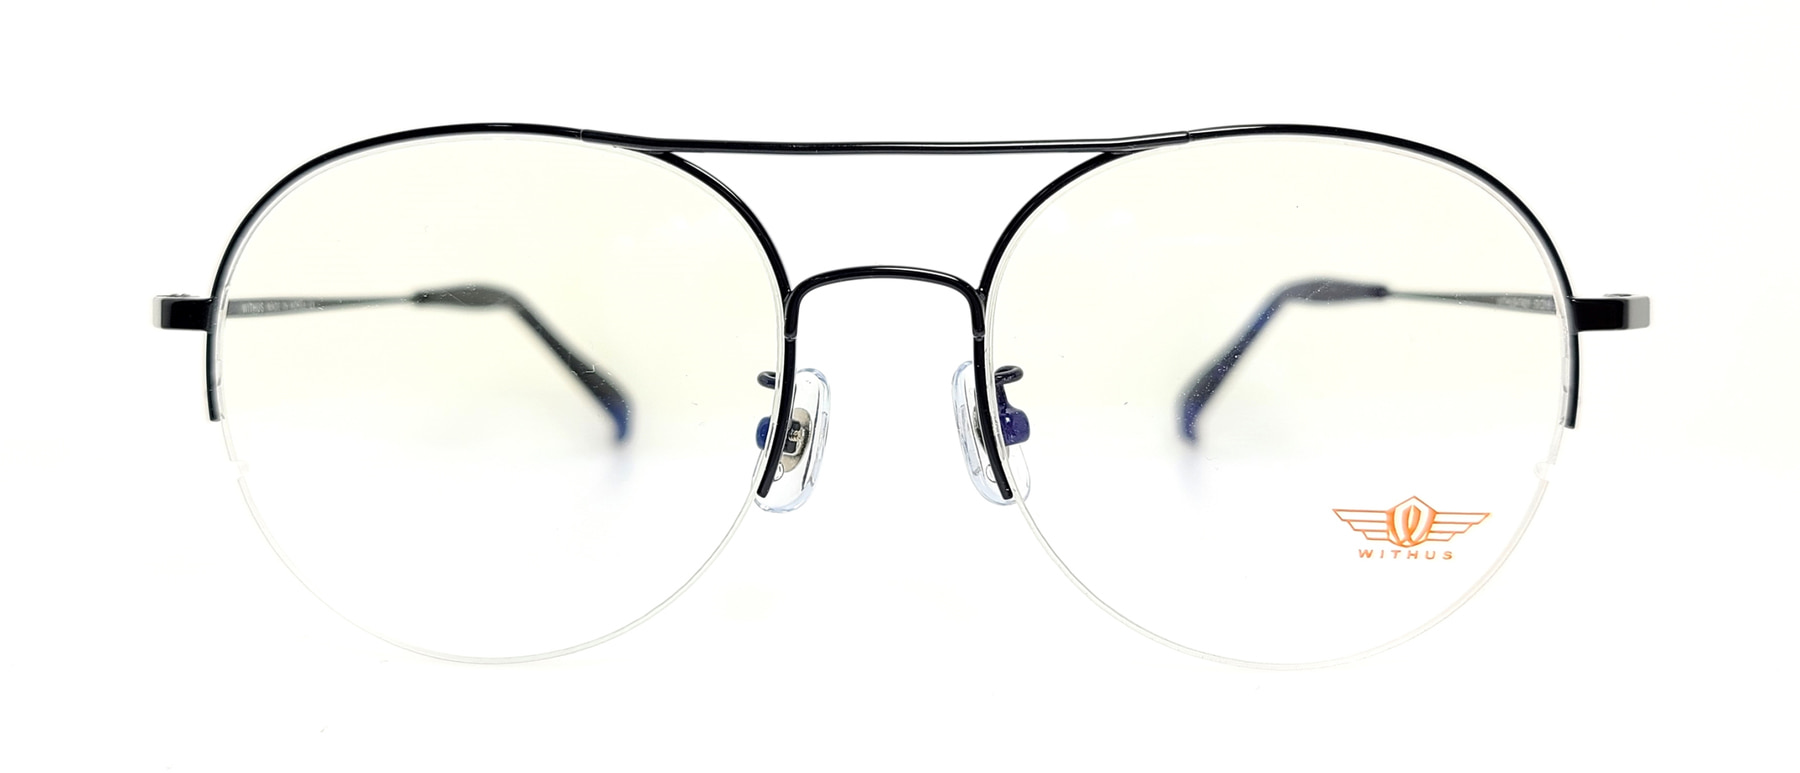 WITHUS-7421, Korean glasses, sunglasses, eyeglasses, glasses